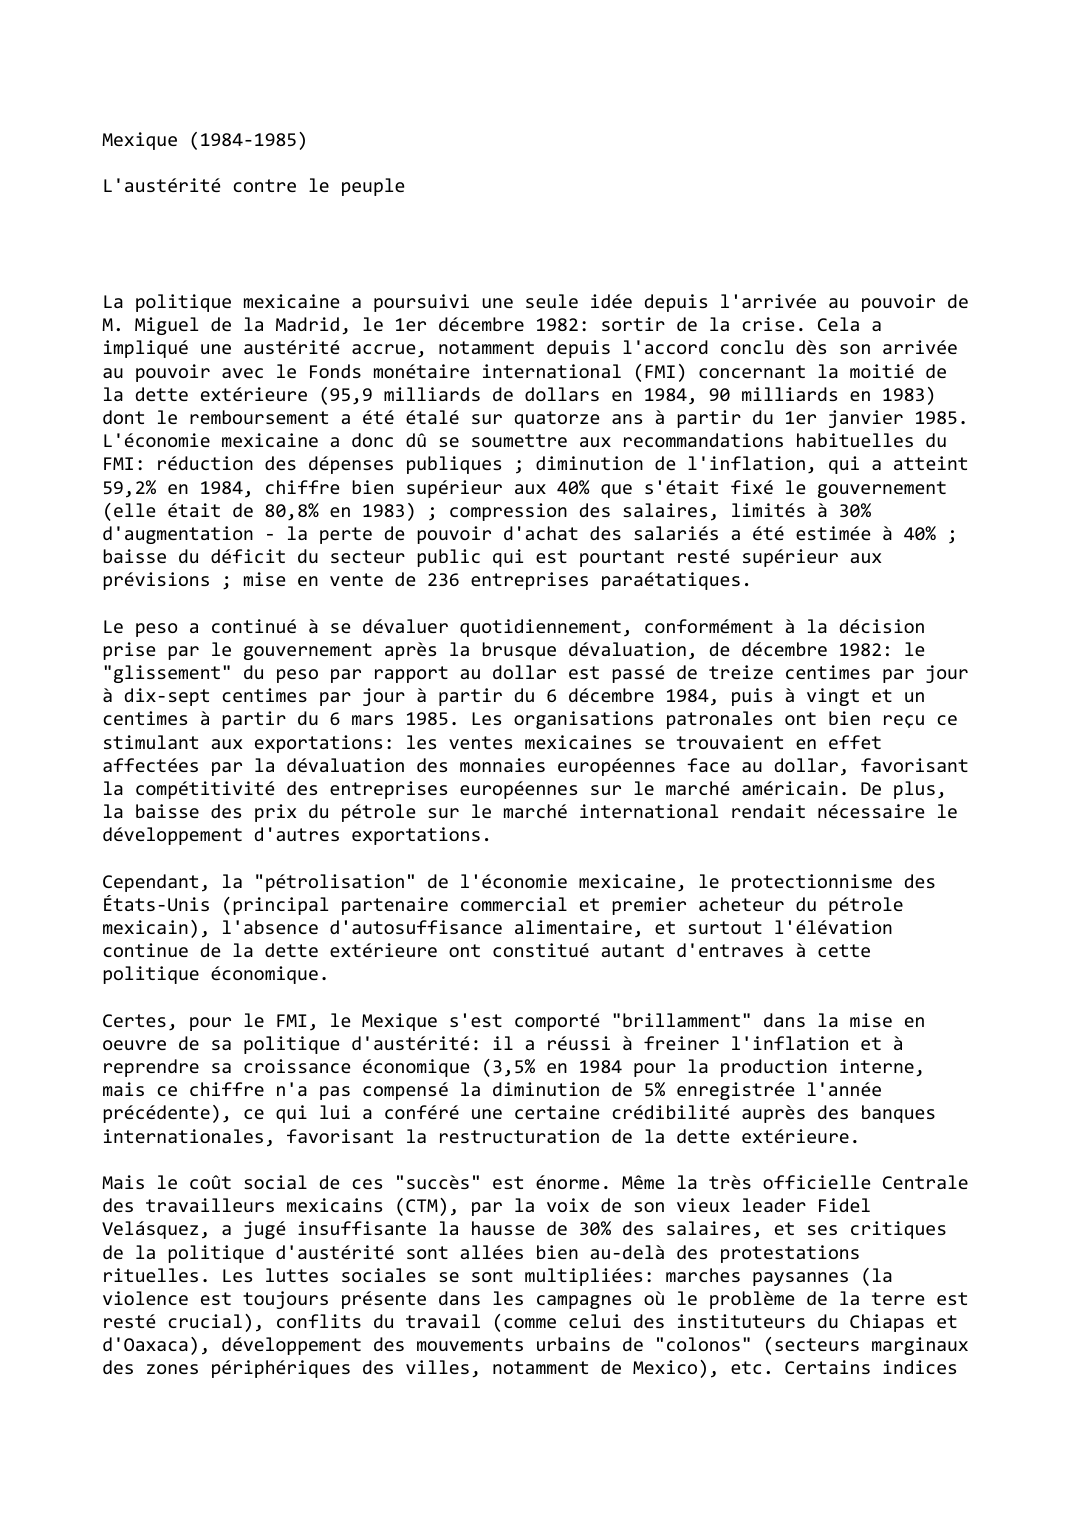 Prévisualisation du document Mexique (1984-1985)

L'austérité contre le peuple